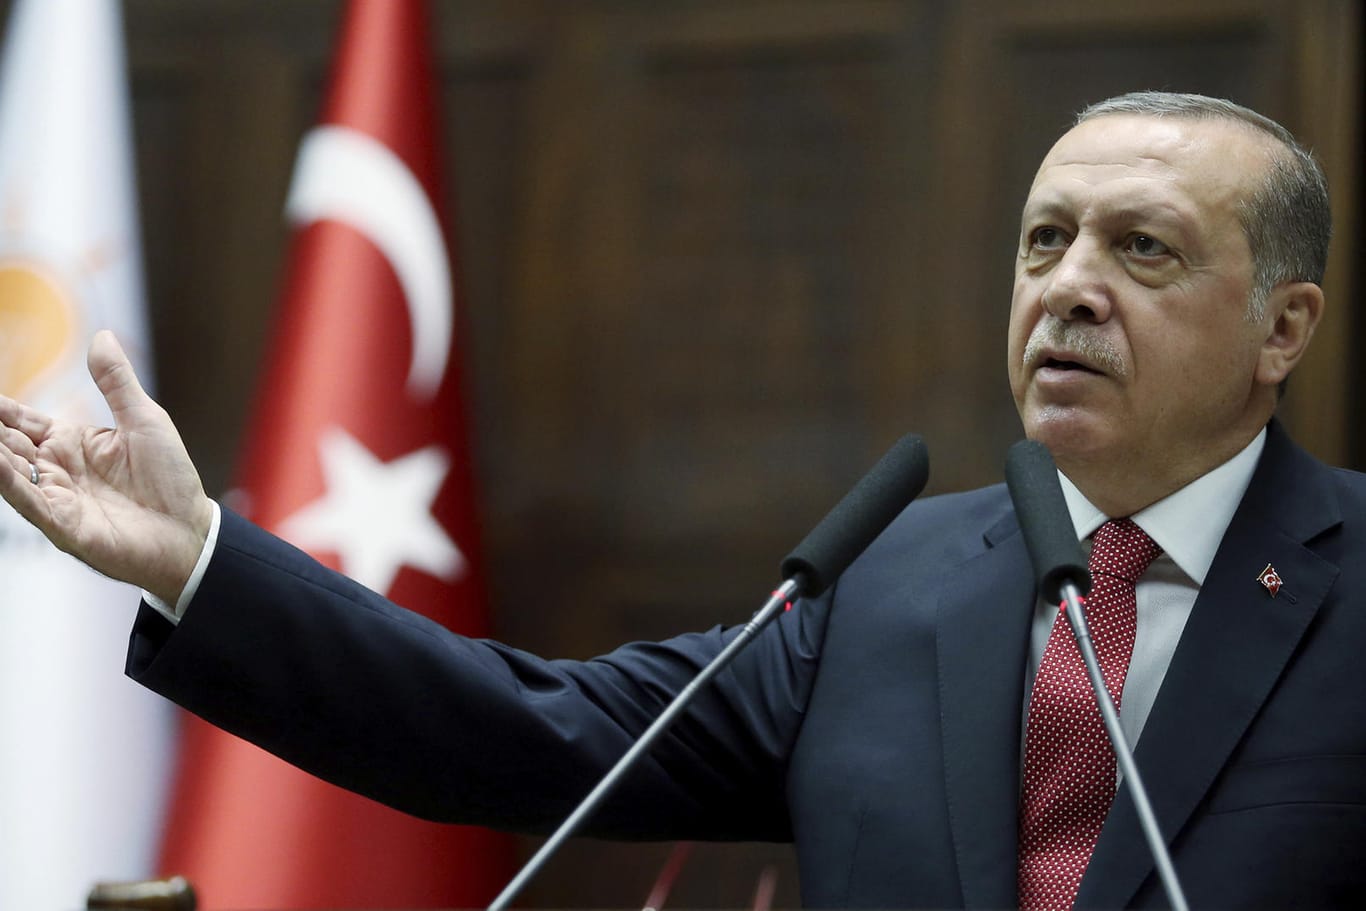 Der türkische Staatspräsidenten Recep Tayyip Erdogan bei einer Rede im türkischen Parlament.